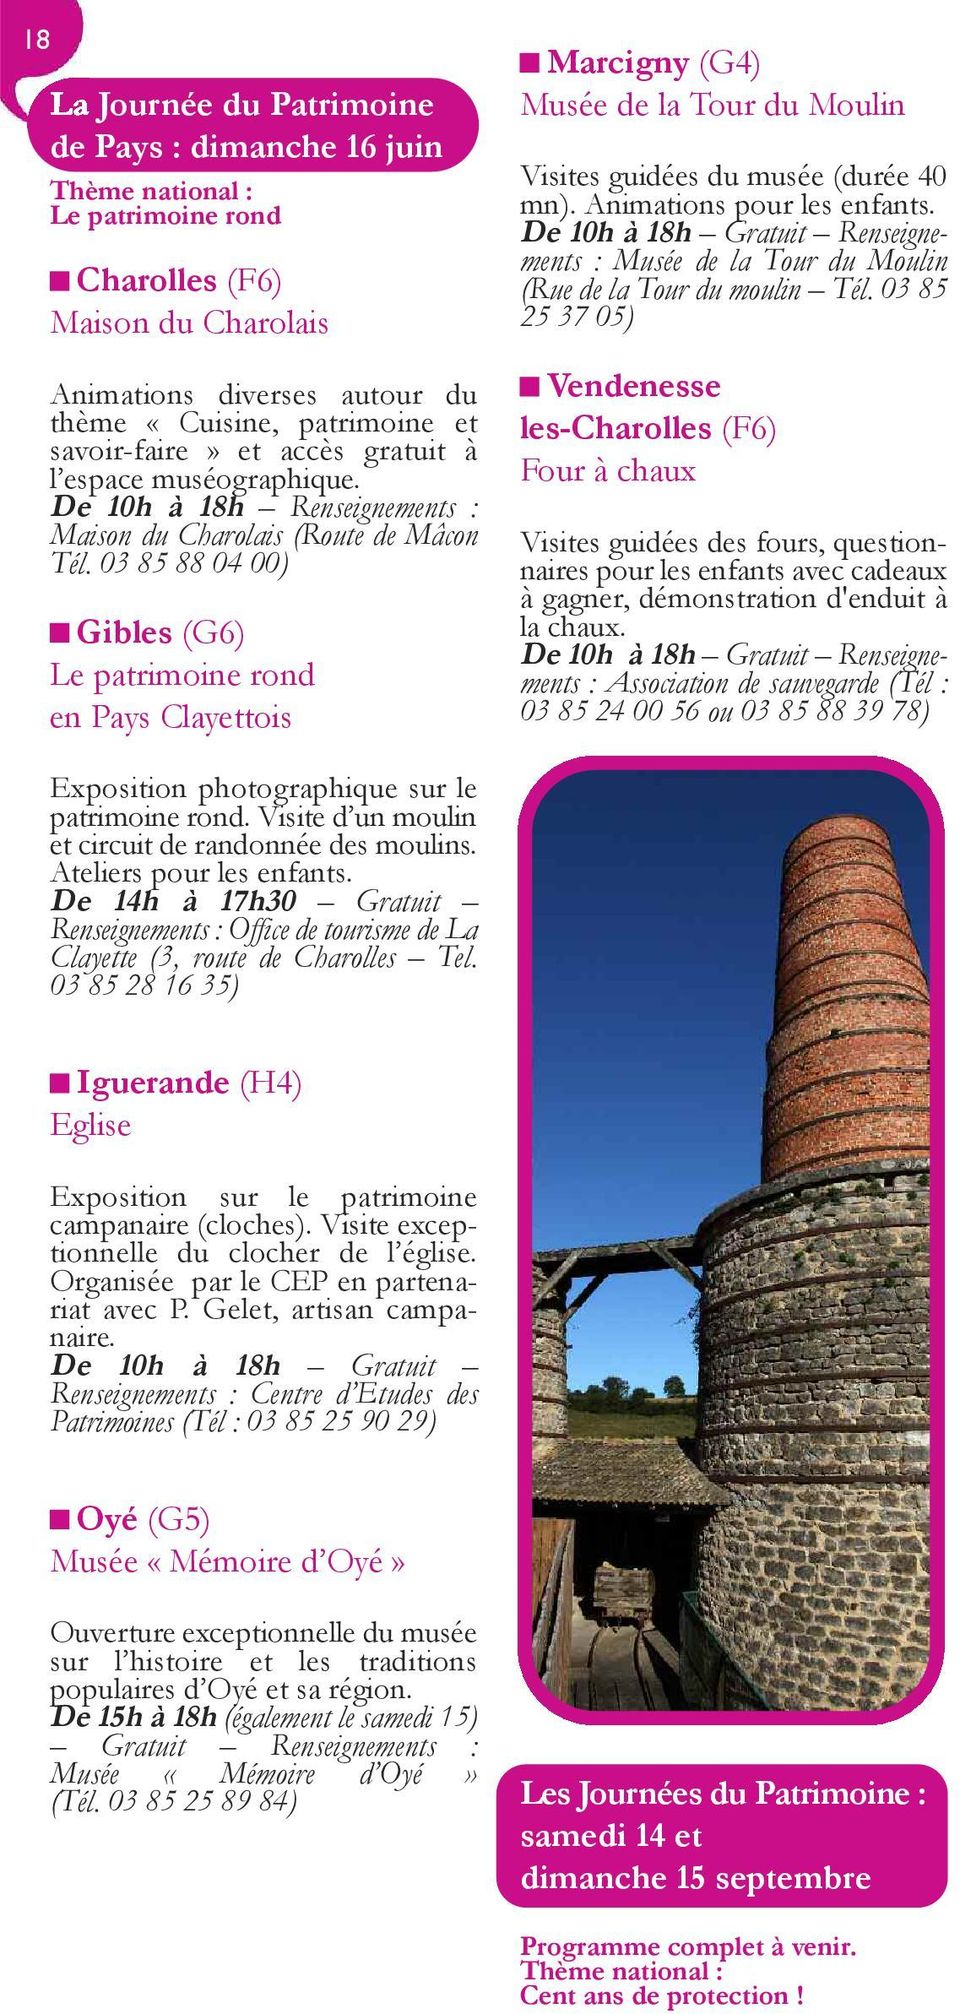 03 85 88 04 00) Gibles (G6) Le patrimoine rond en Pays Clayettois Marcigny (G4) Musée de la Tour du Moulin Visites guidées du musée (durée 40 mn). Animations pour les enfants.